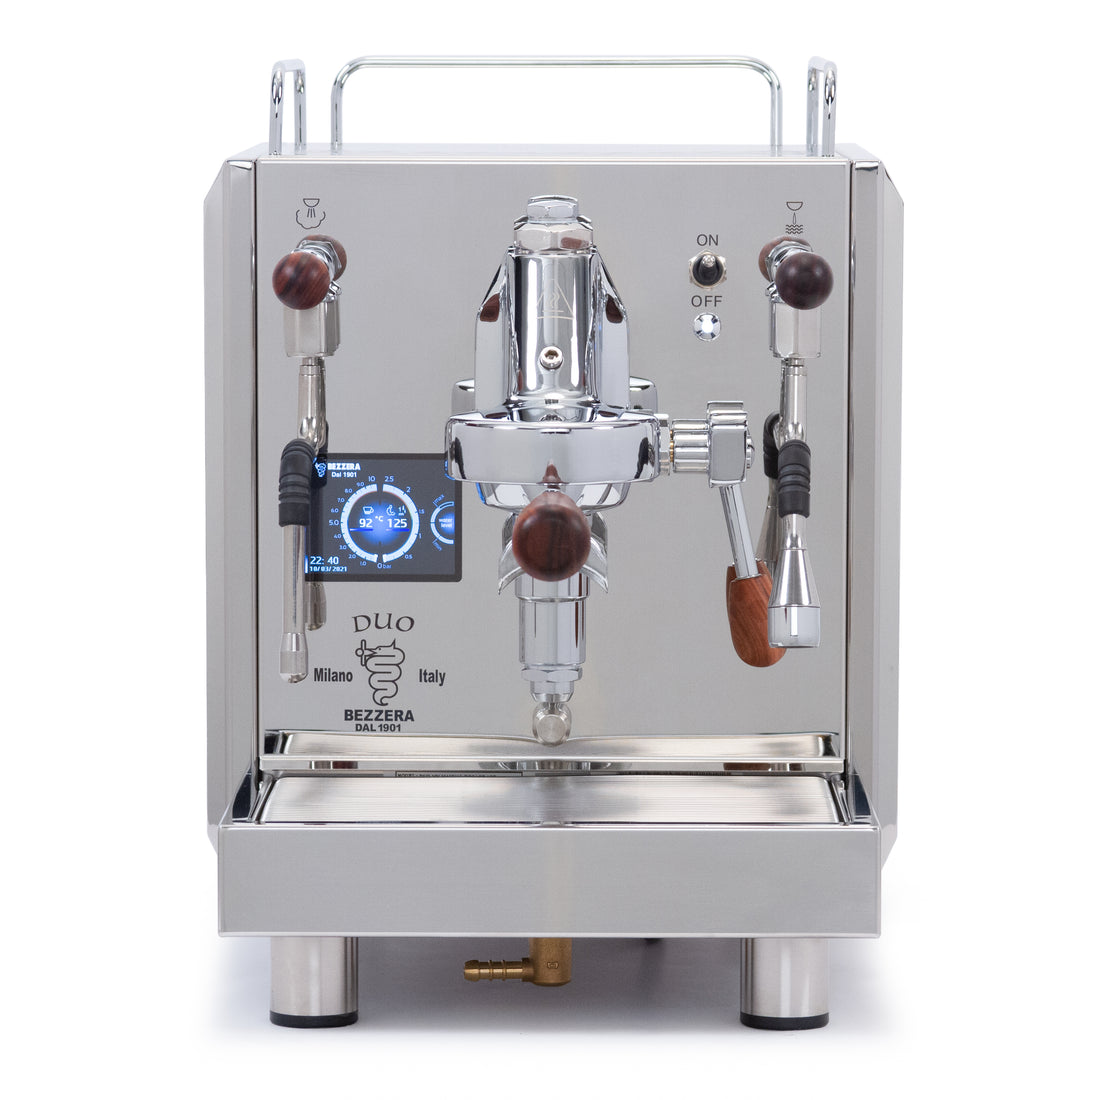 Bezzera DUO MN Dual Boiler Espresso Machine